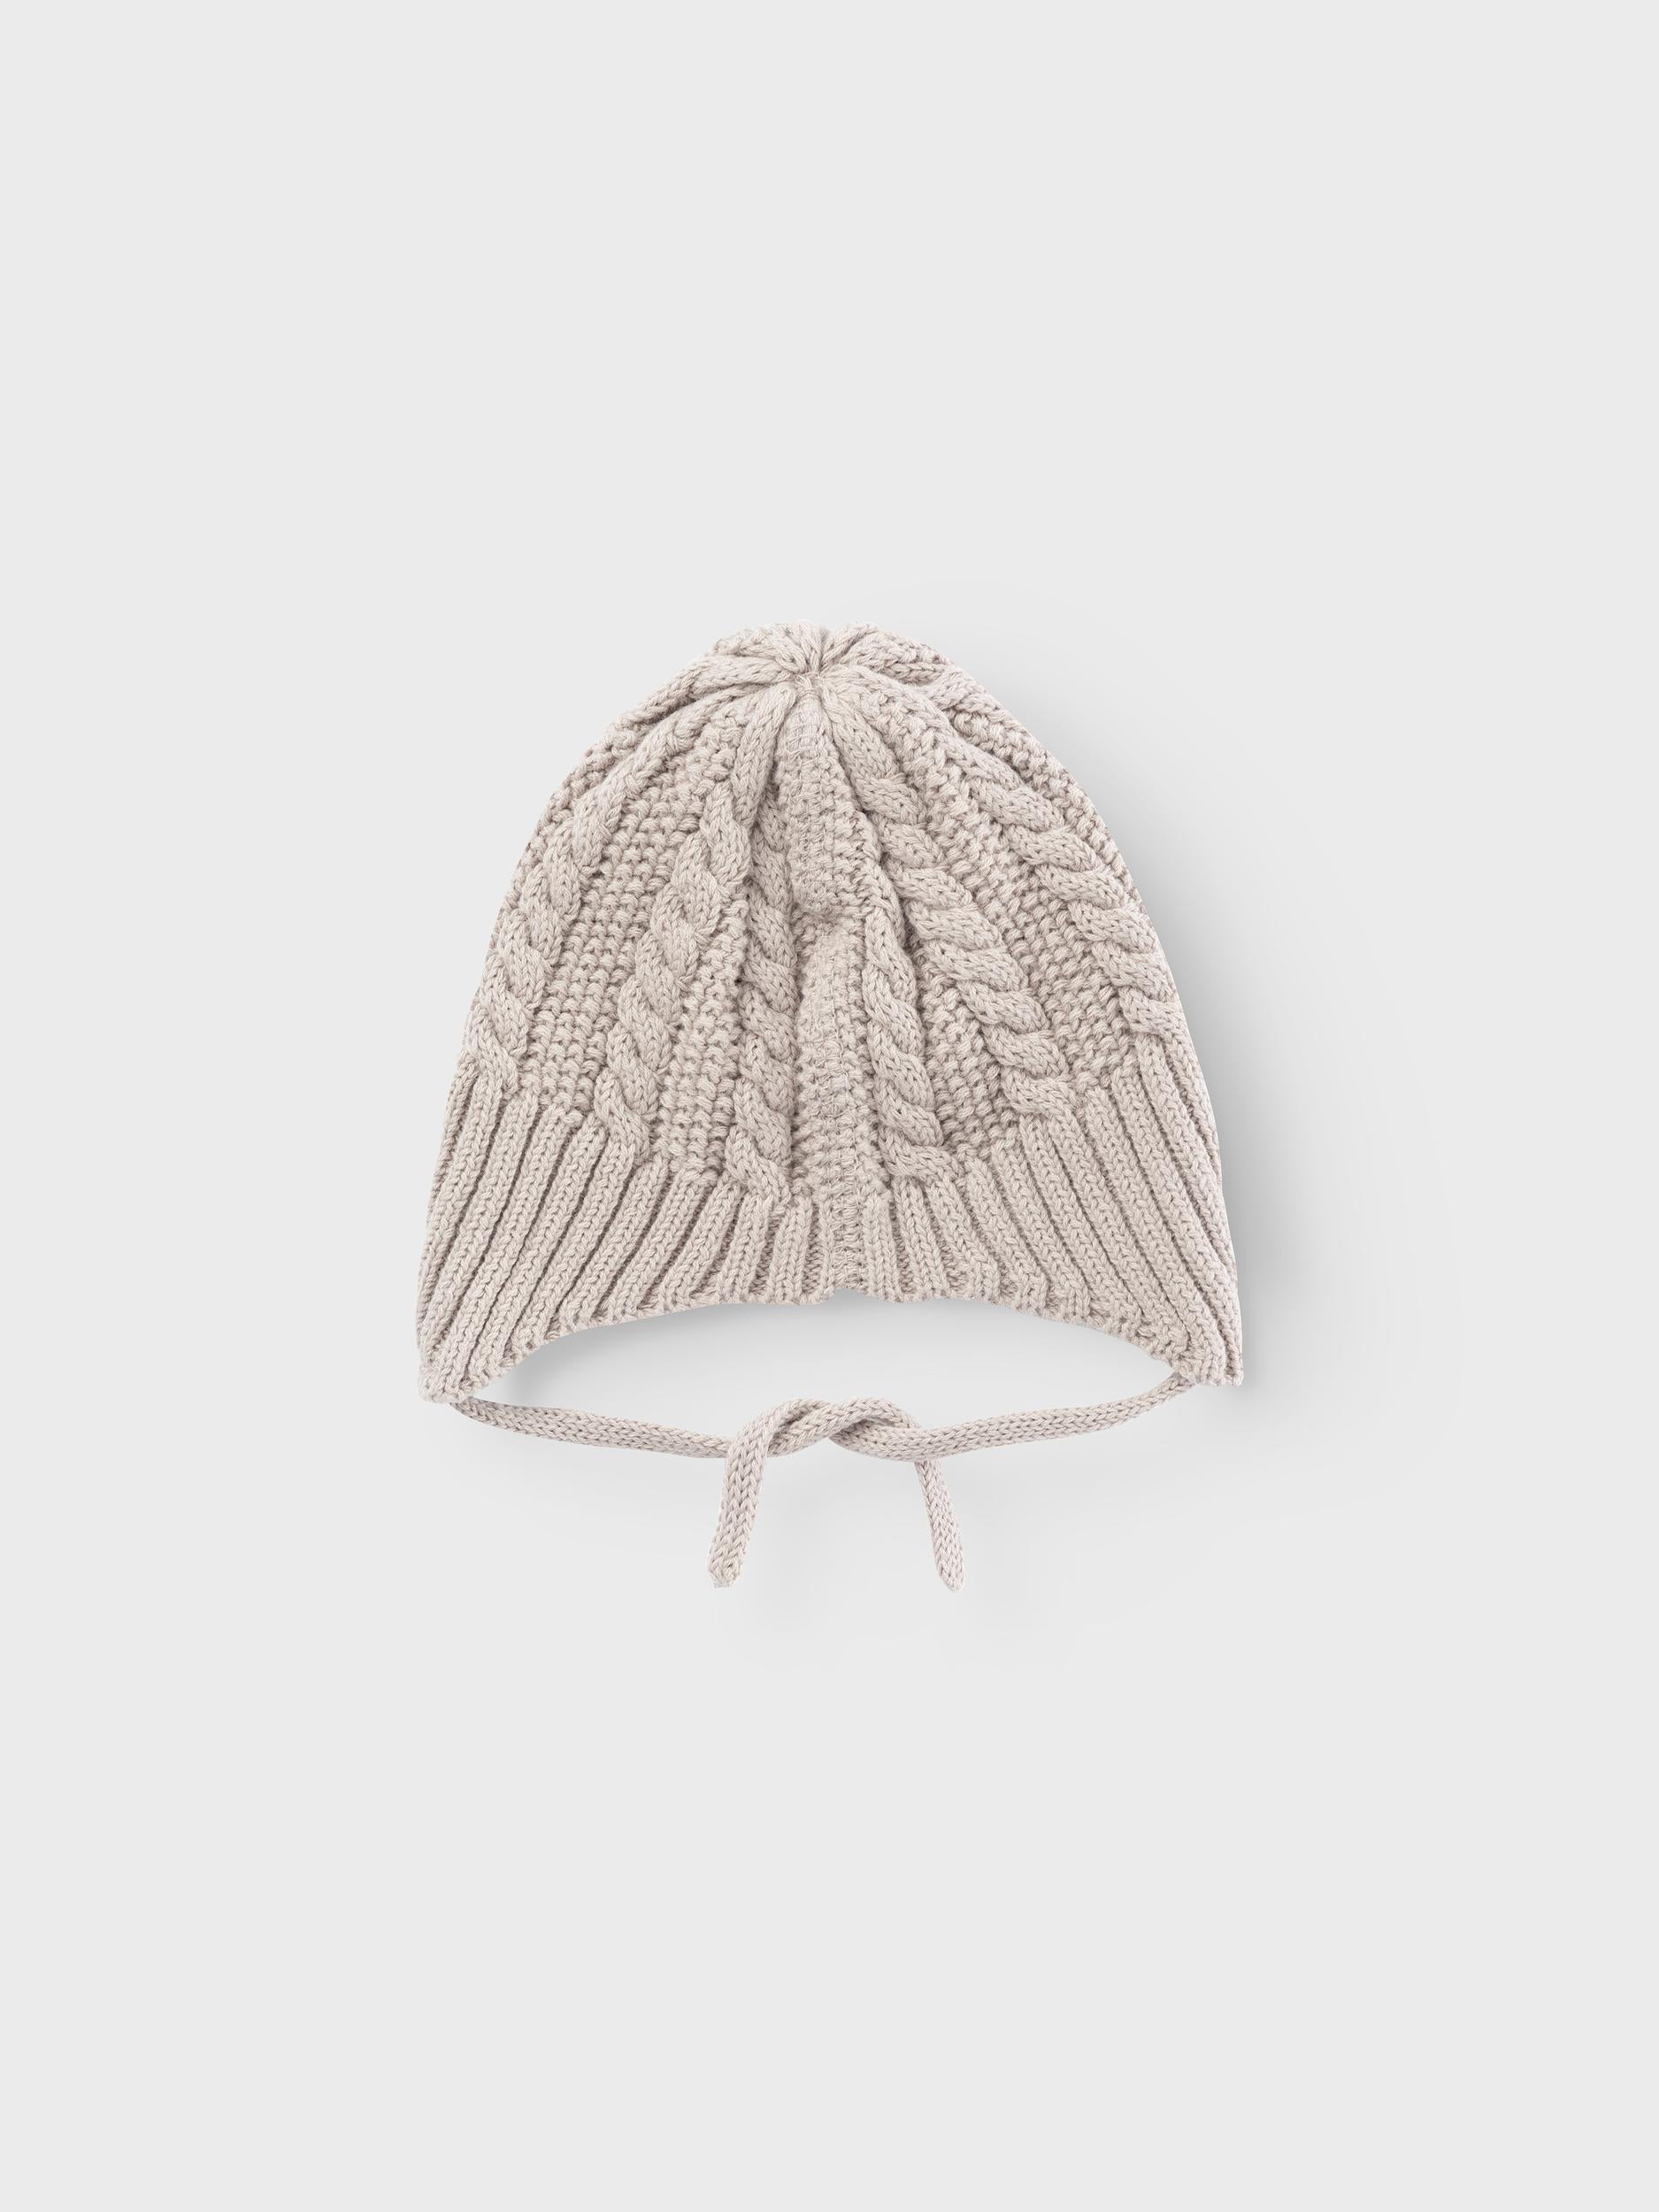 Lil Atelier Daio Knit Hat - Pure Cashmere